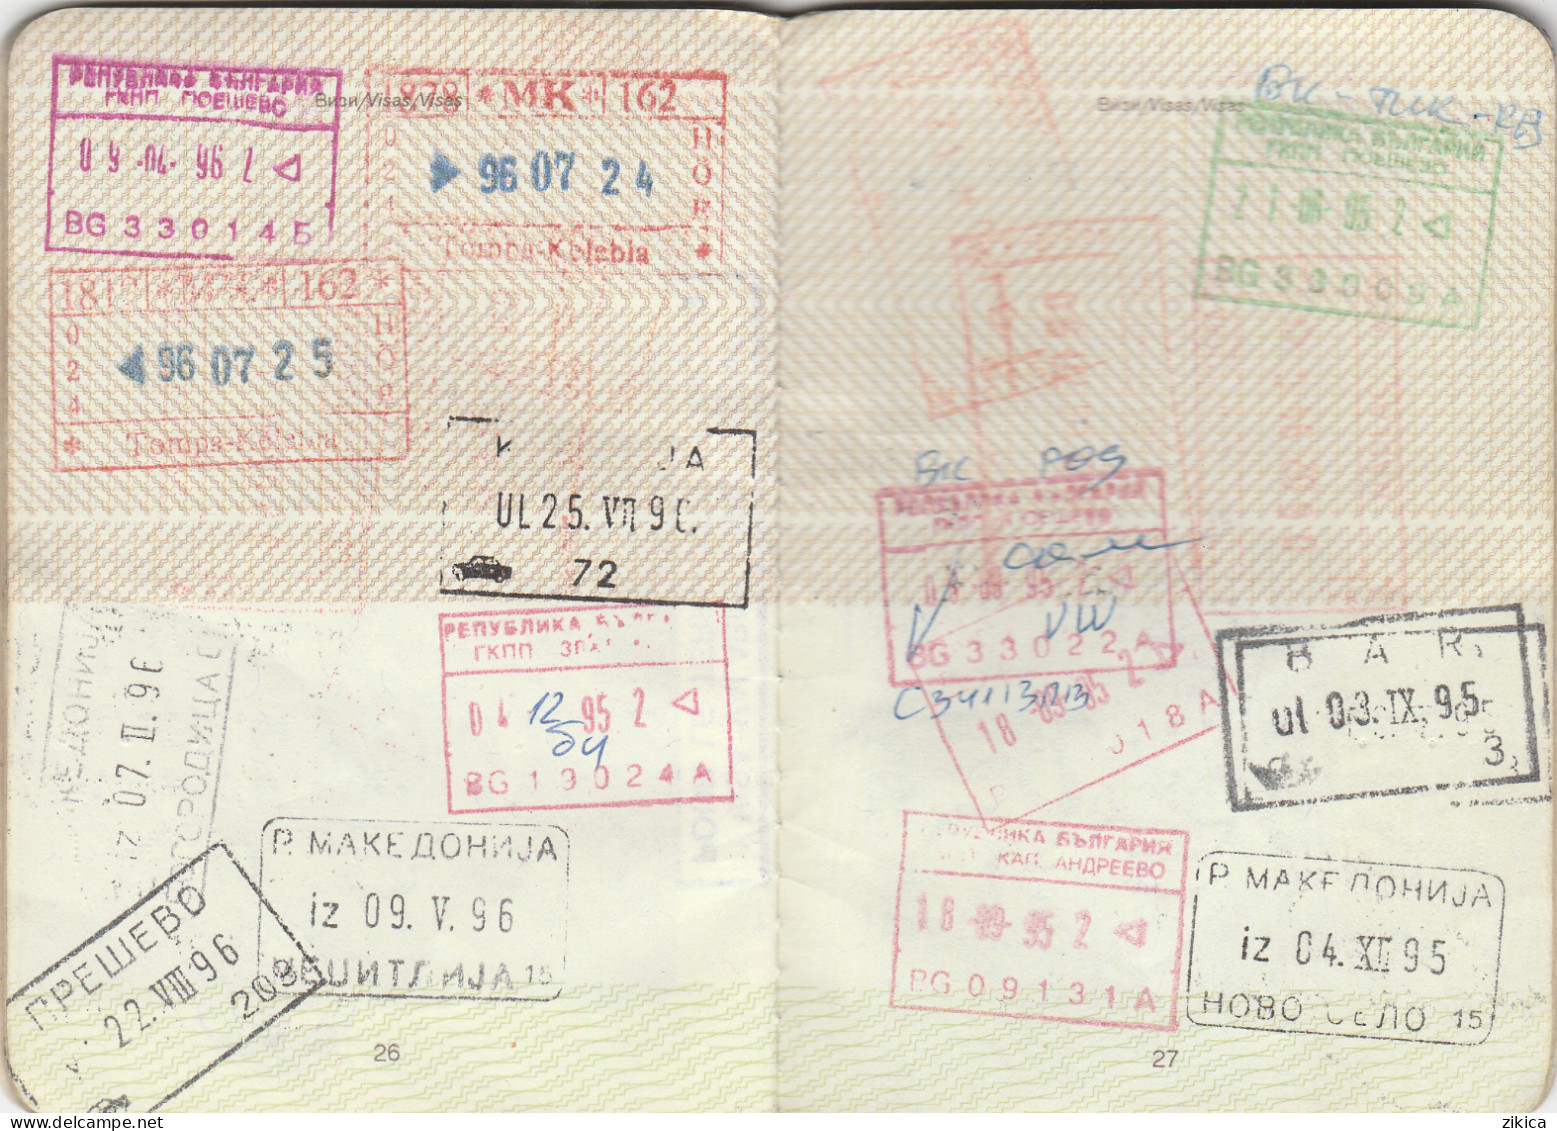 Passeport,passport,pasaporte, reisepass,Macedonia - visas...